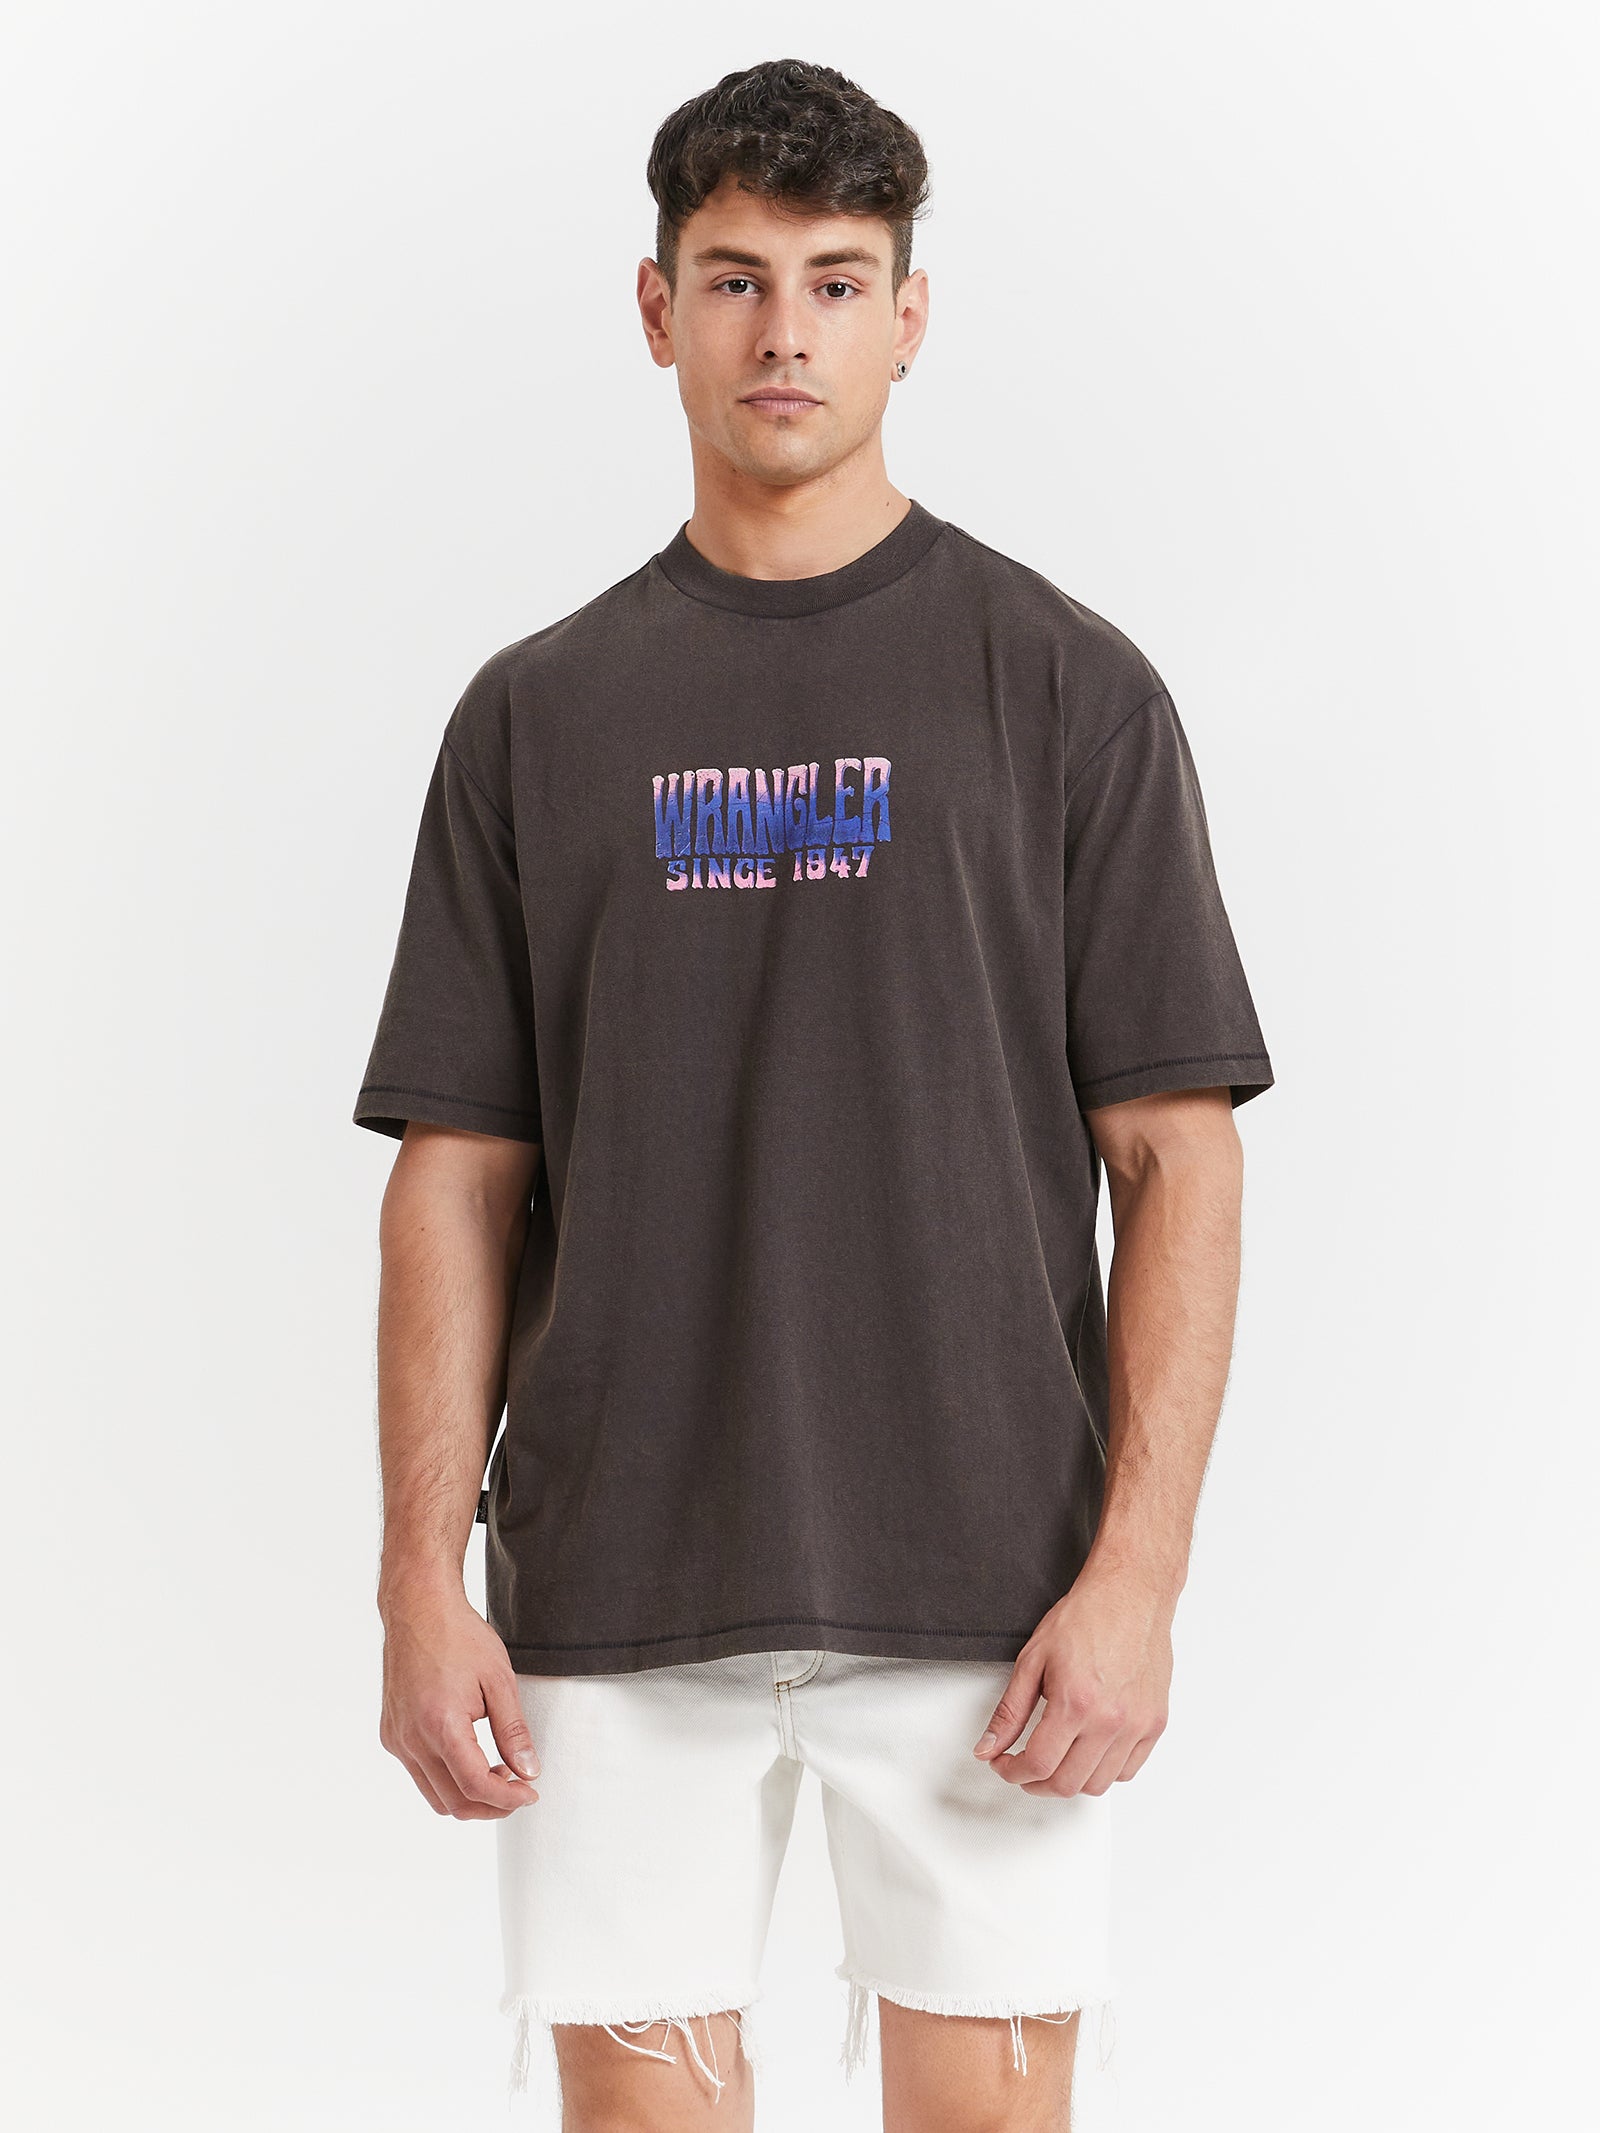 Mind Mirage Slacker T-Shirt in Worn Black - Glue Store